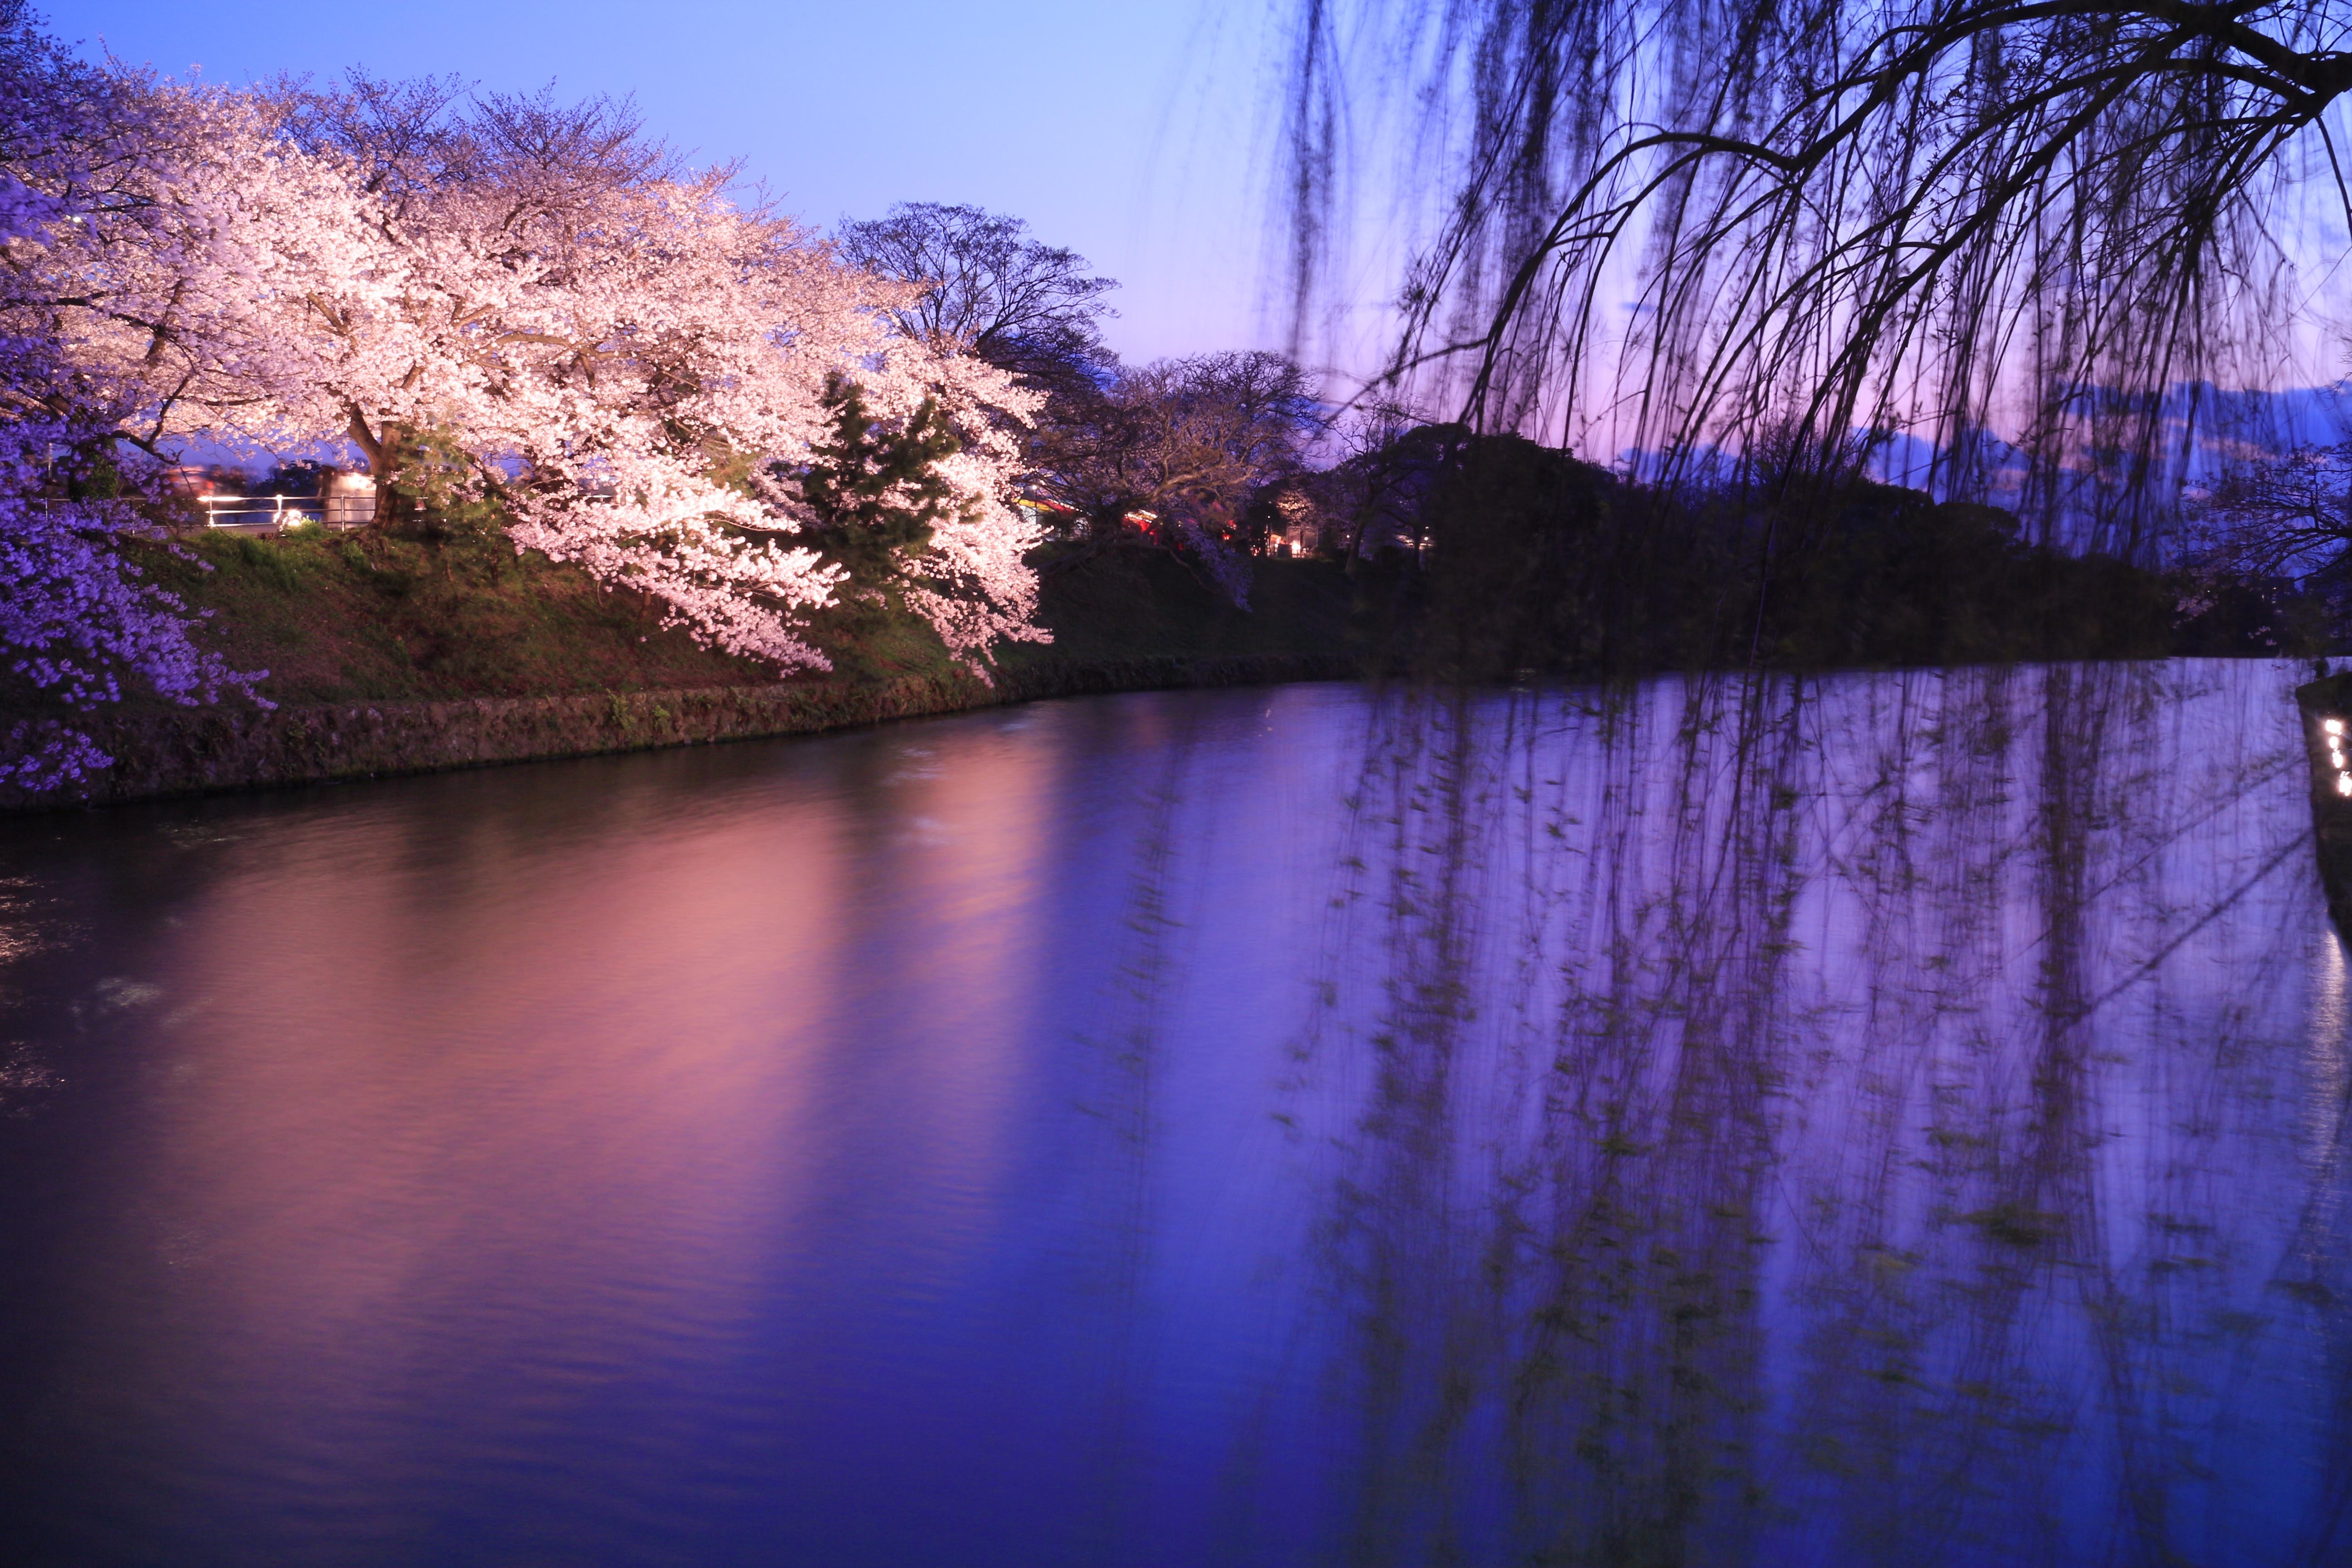 中級編 夜桜編 スマホじゃ撮れない桜の撮り方 Snsで目を惹くような幻想的な夜桜を撮りに行こう カメラ女子必見 お花の撮り方